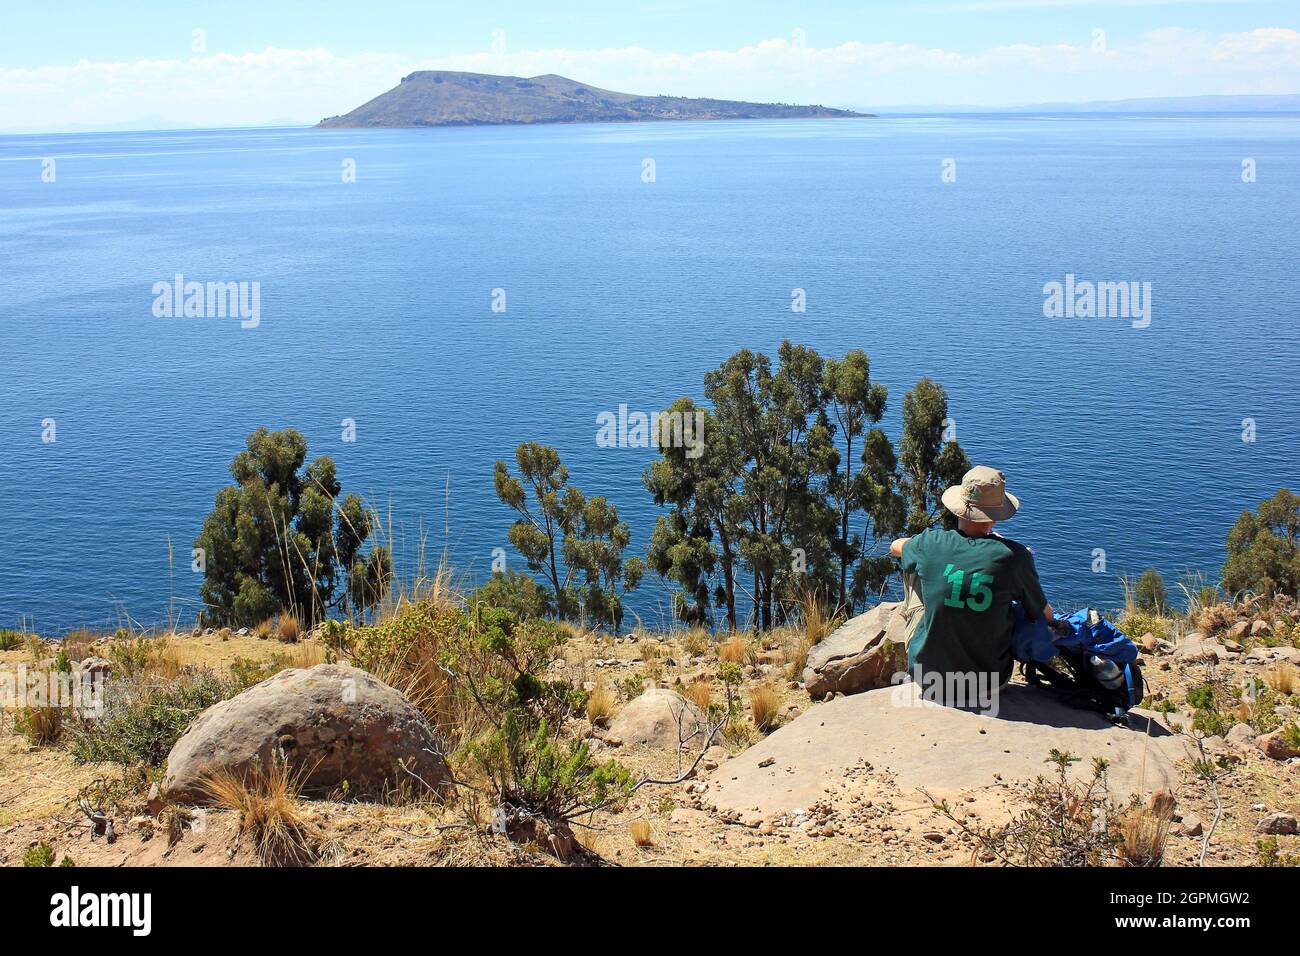 Tranquillité sur l'île de Taquile, lac Titicaca, Pérou Banque D'Images